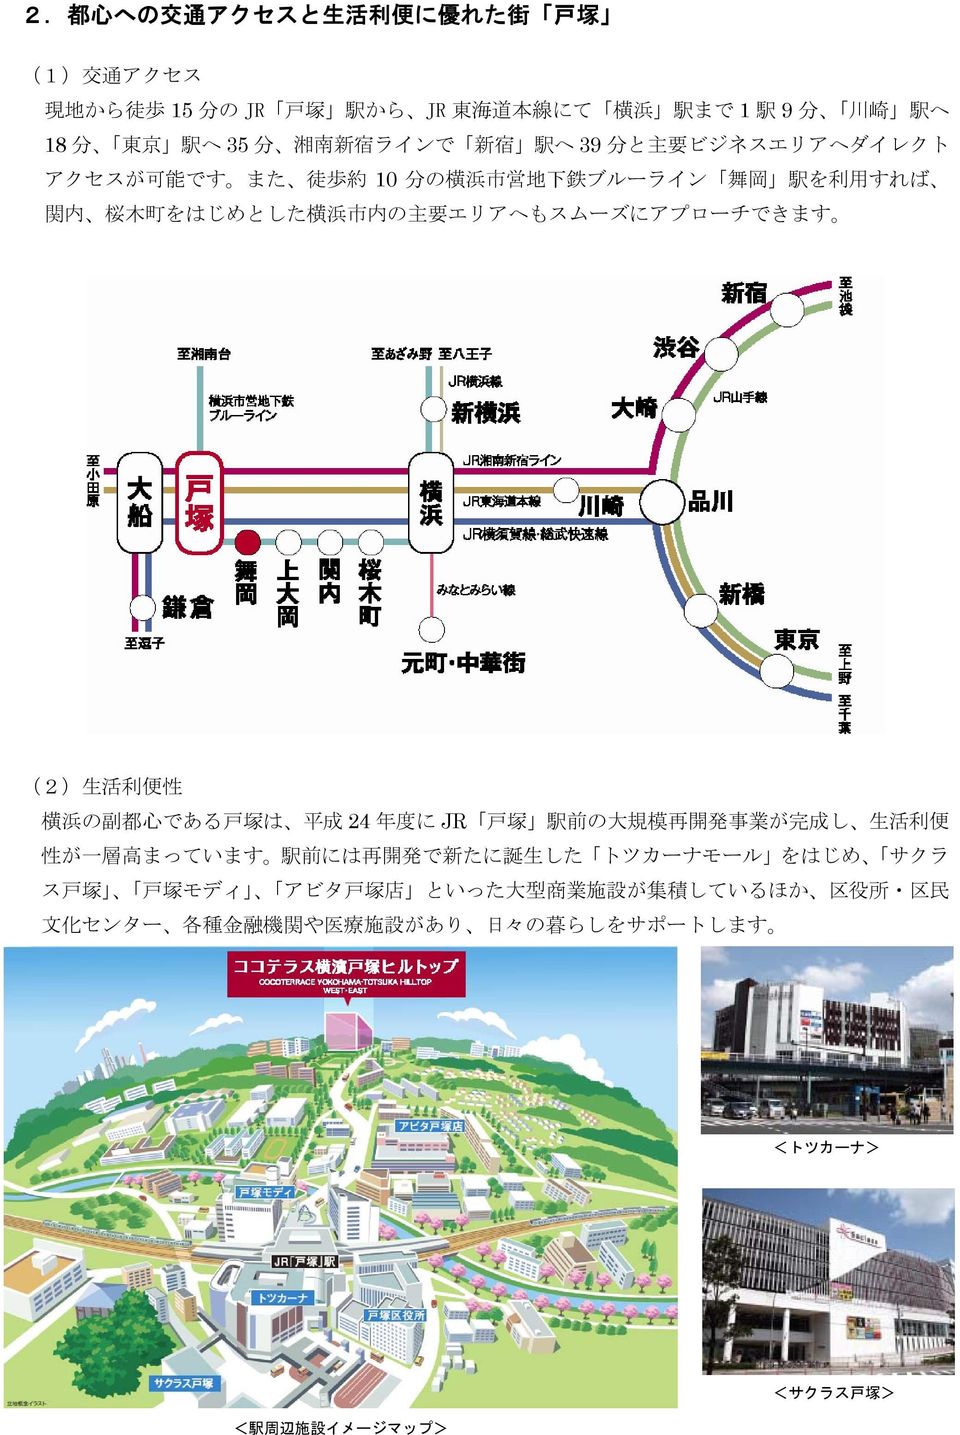 エリアへもスムーズにアプローチできます (2) 生 活 利 便 性 横 浜 の 副 都 心 である 戸 塚 は 平 成 24 年 度 に JR 戸 塚 駅 前 の 大 規 模 再 開 発 事 業 が 完 成 し 生 活 利 便 性 が 一 層 高 まっています 駅 前 には 再 開 発 で 新 たに 誕 生